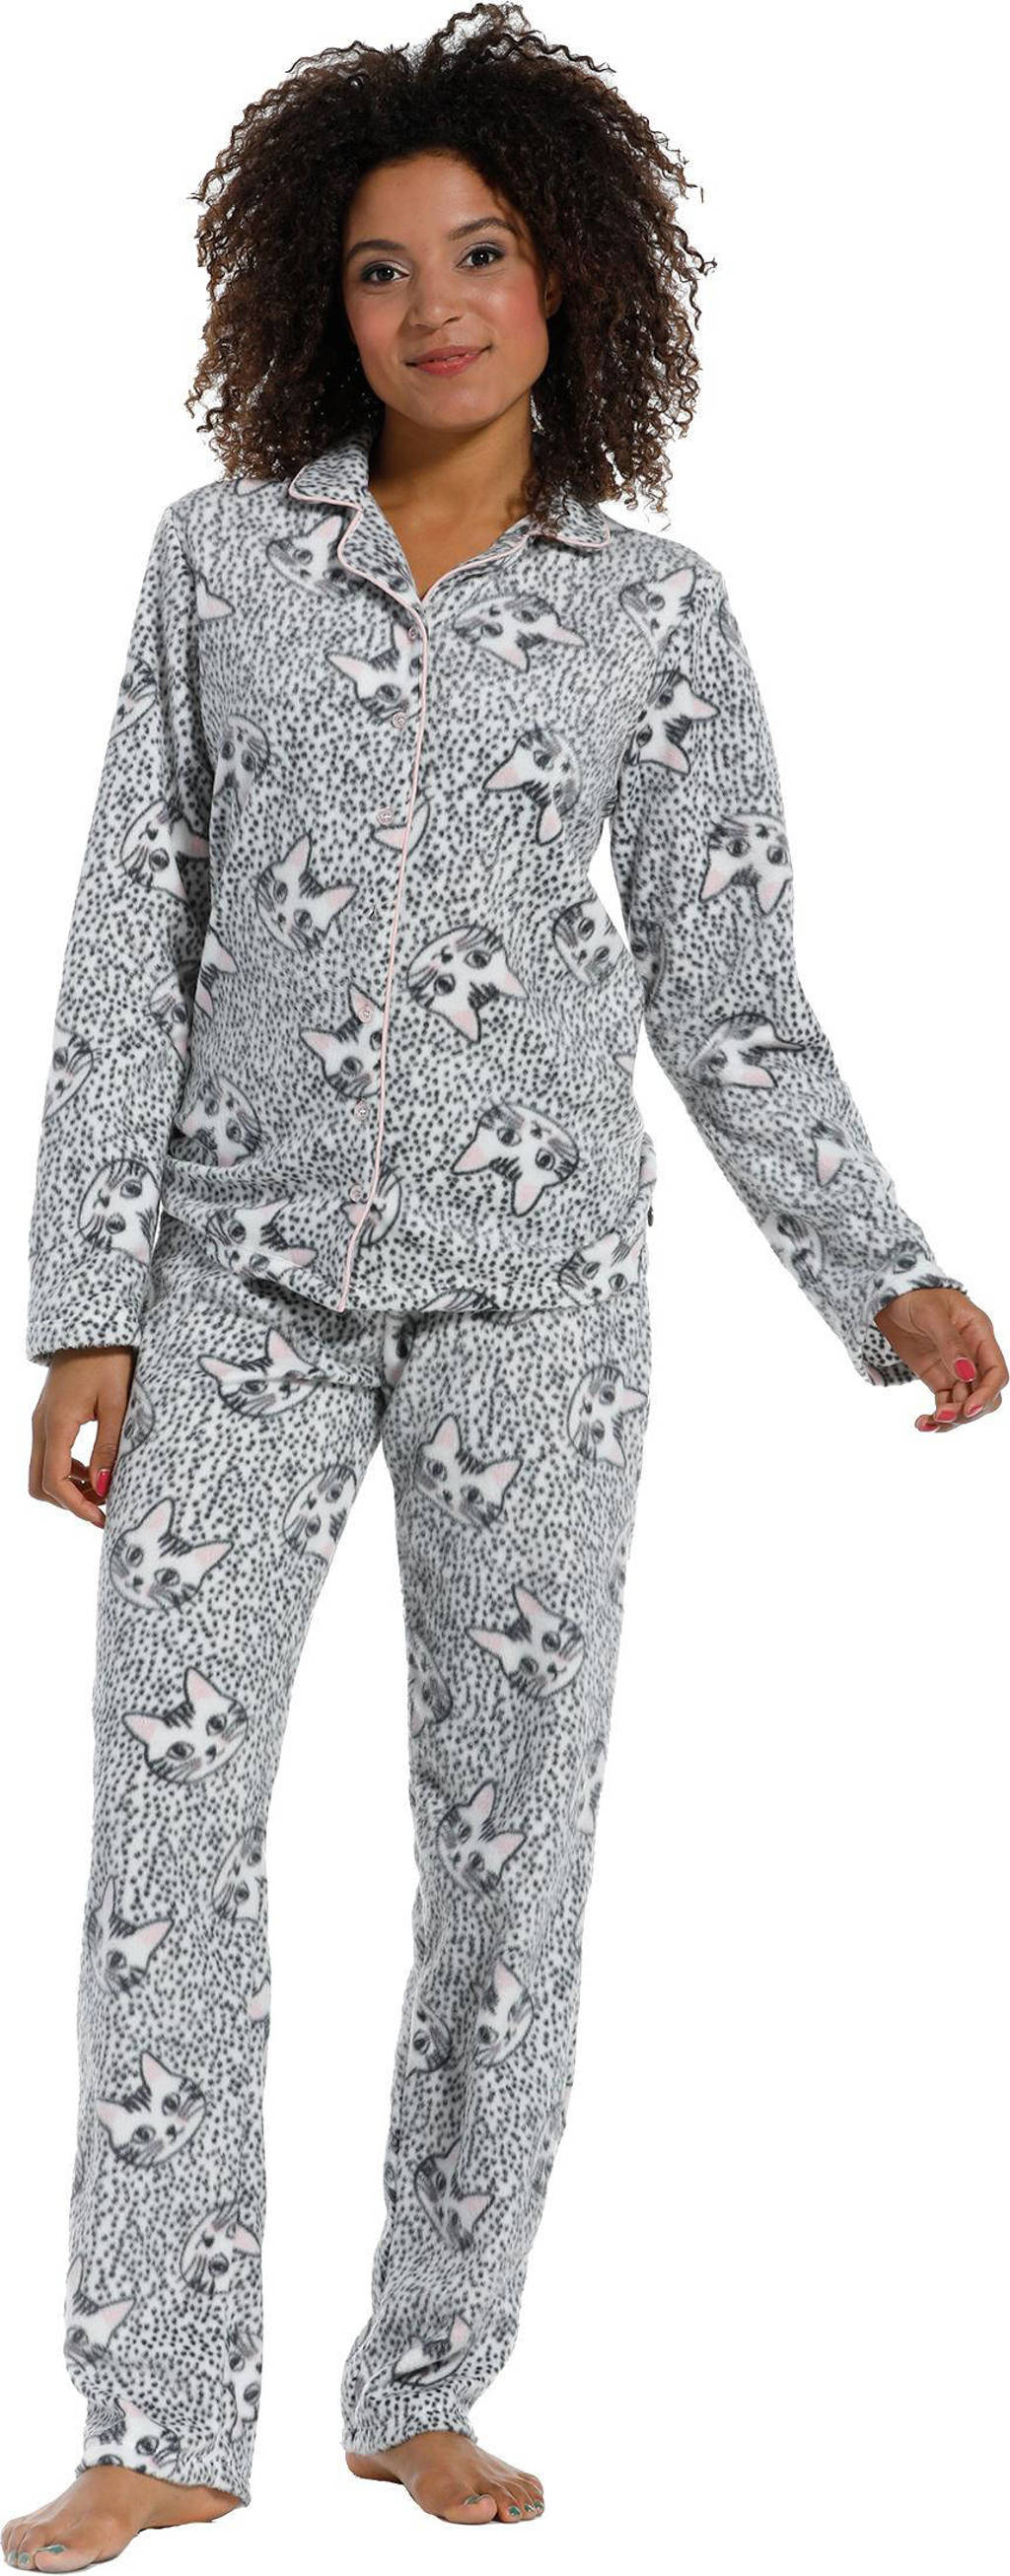 Rebelle fleece pyjama met poezen print grijs/roze, Grijs/roze